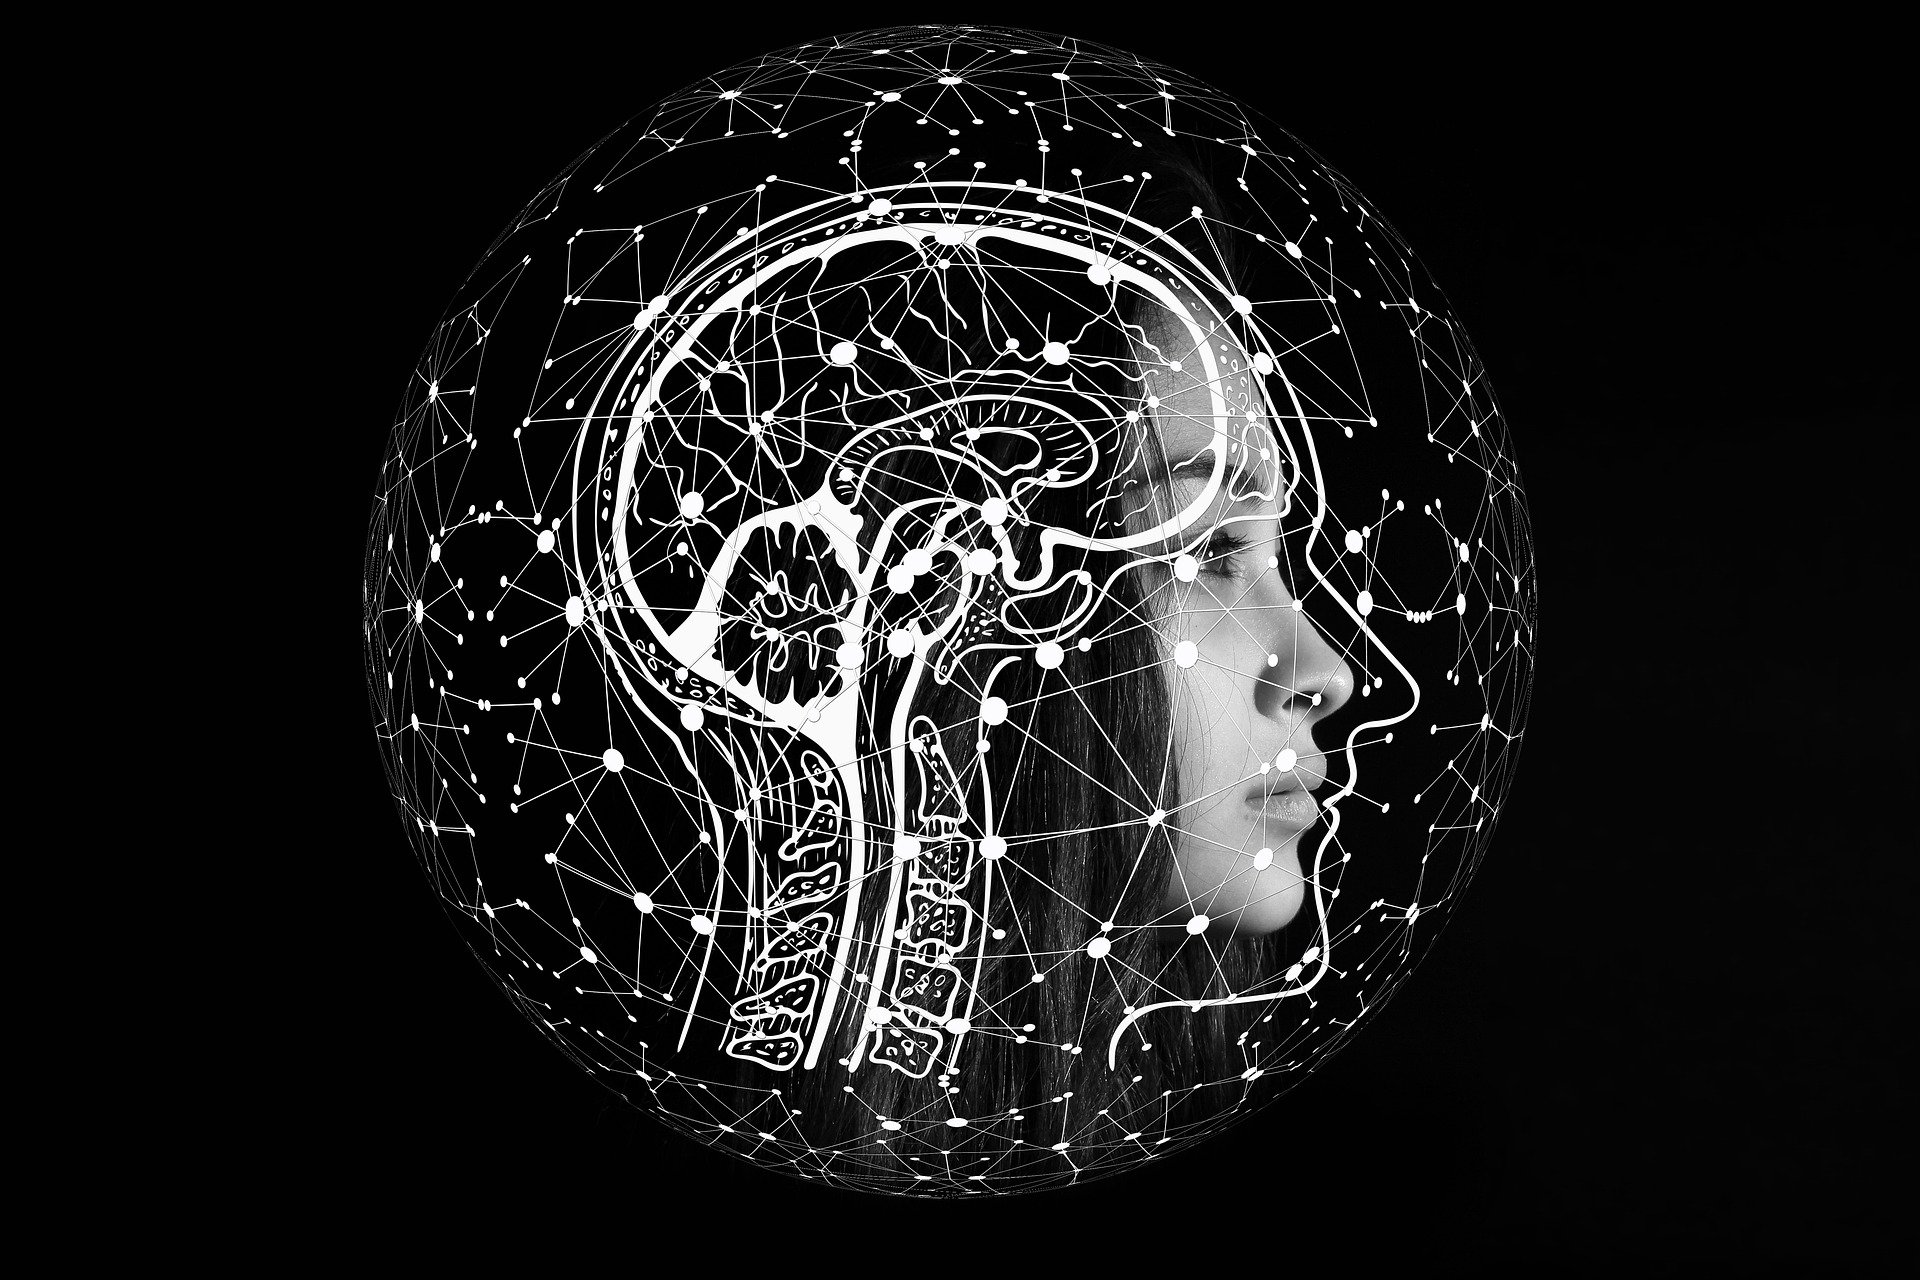 Illustrasjon av et kvinneansikt fra siden hvor et utsnitt av hjernen er tegnet oppå hodet. Hjernen og ansiktet er omkranset av sammenkoblete prikker og streker.